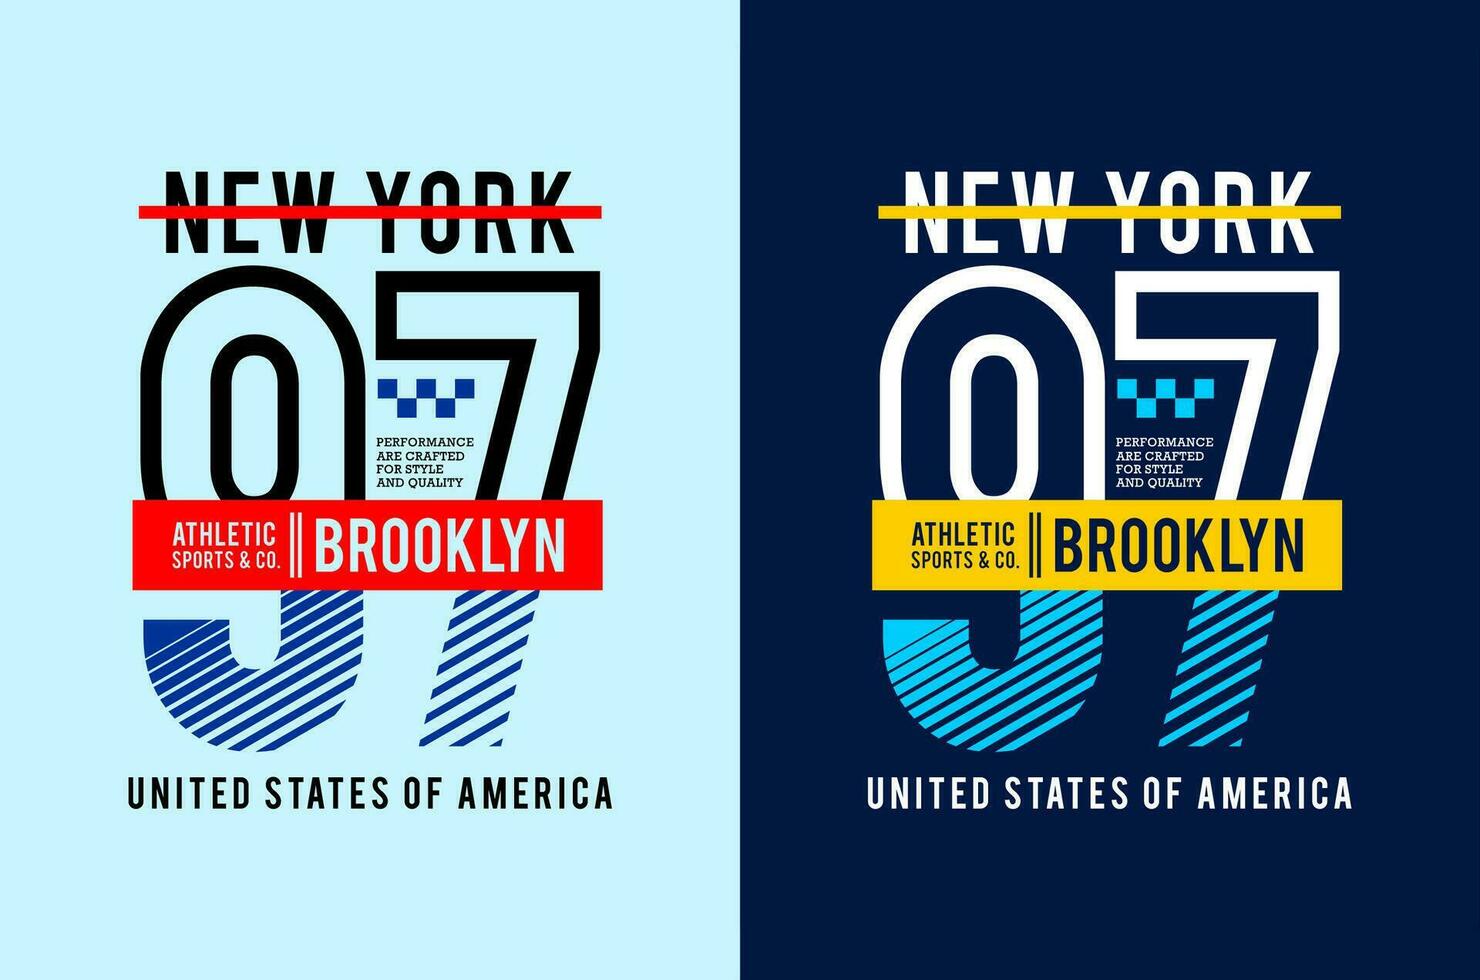 Novo Iorque Brooklyn tipografia, para impressão em t camisas etc. vetor